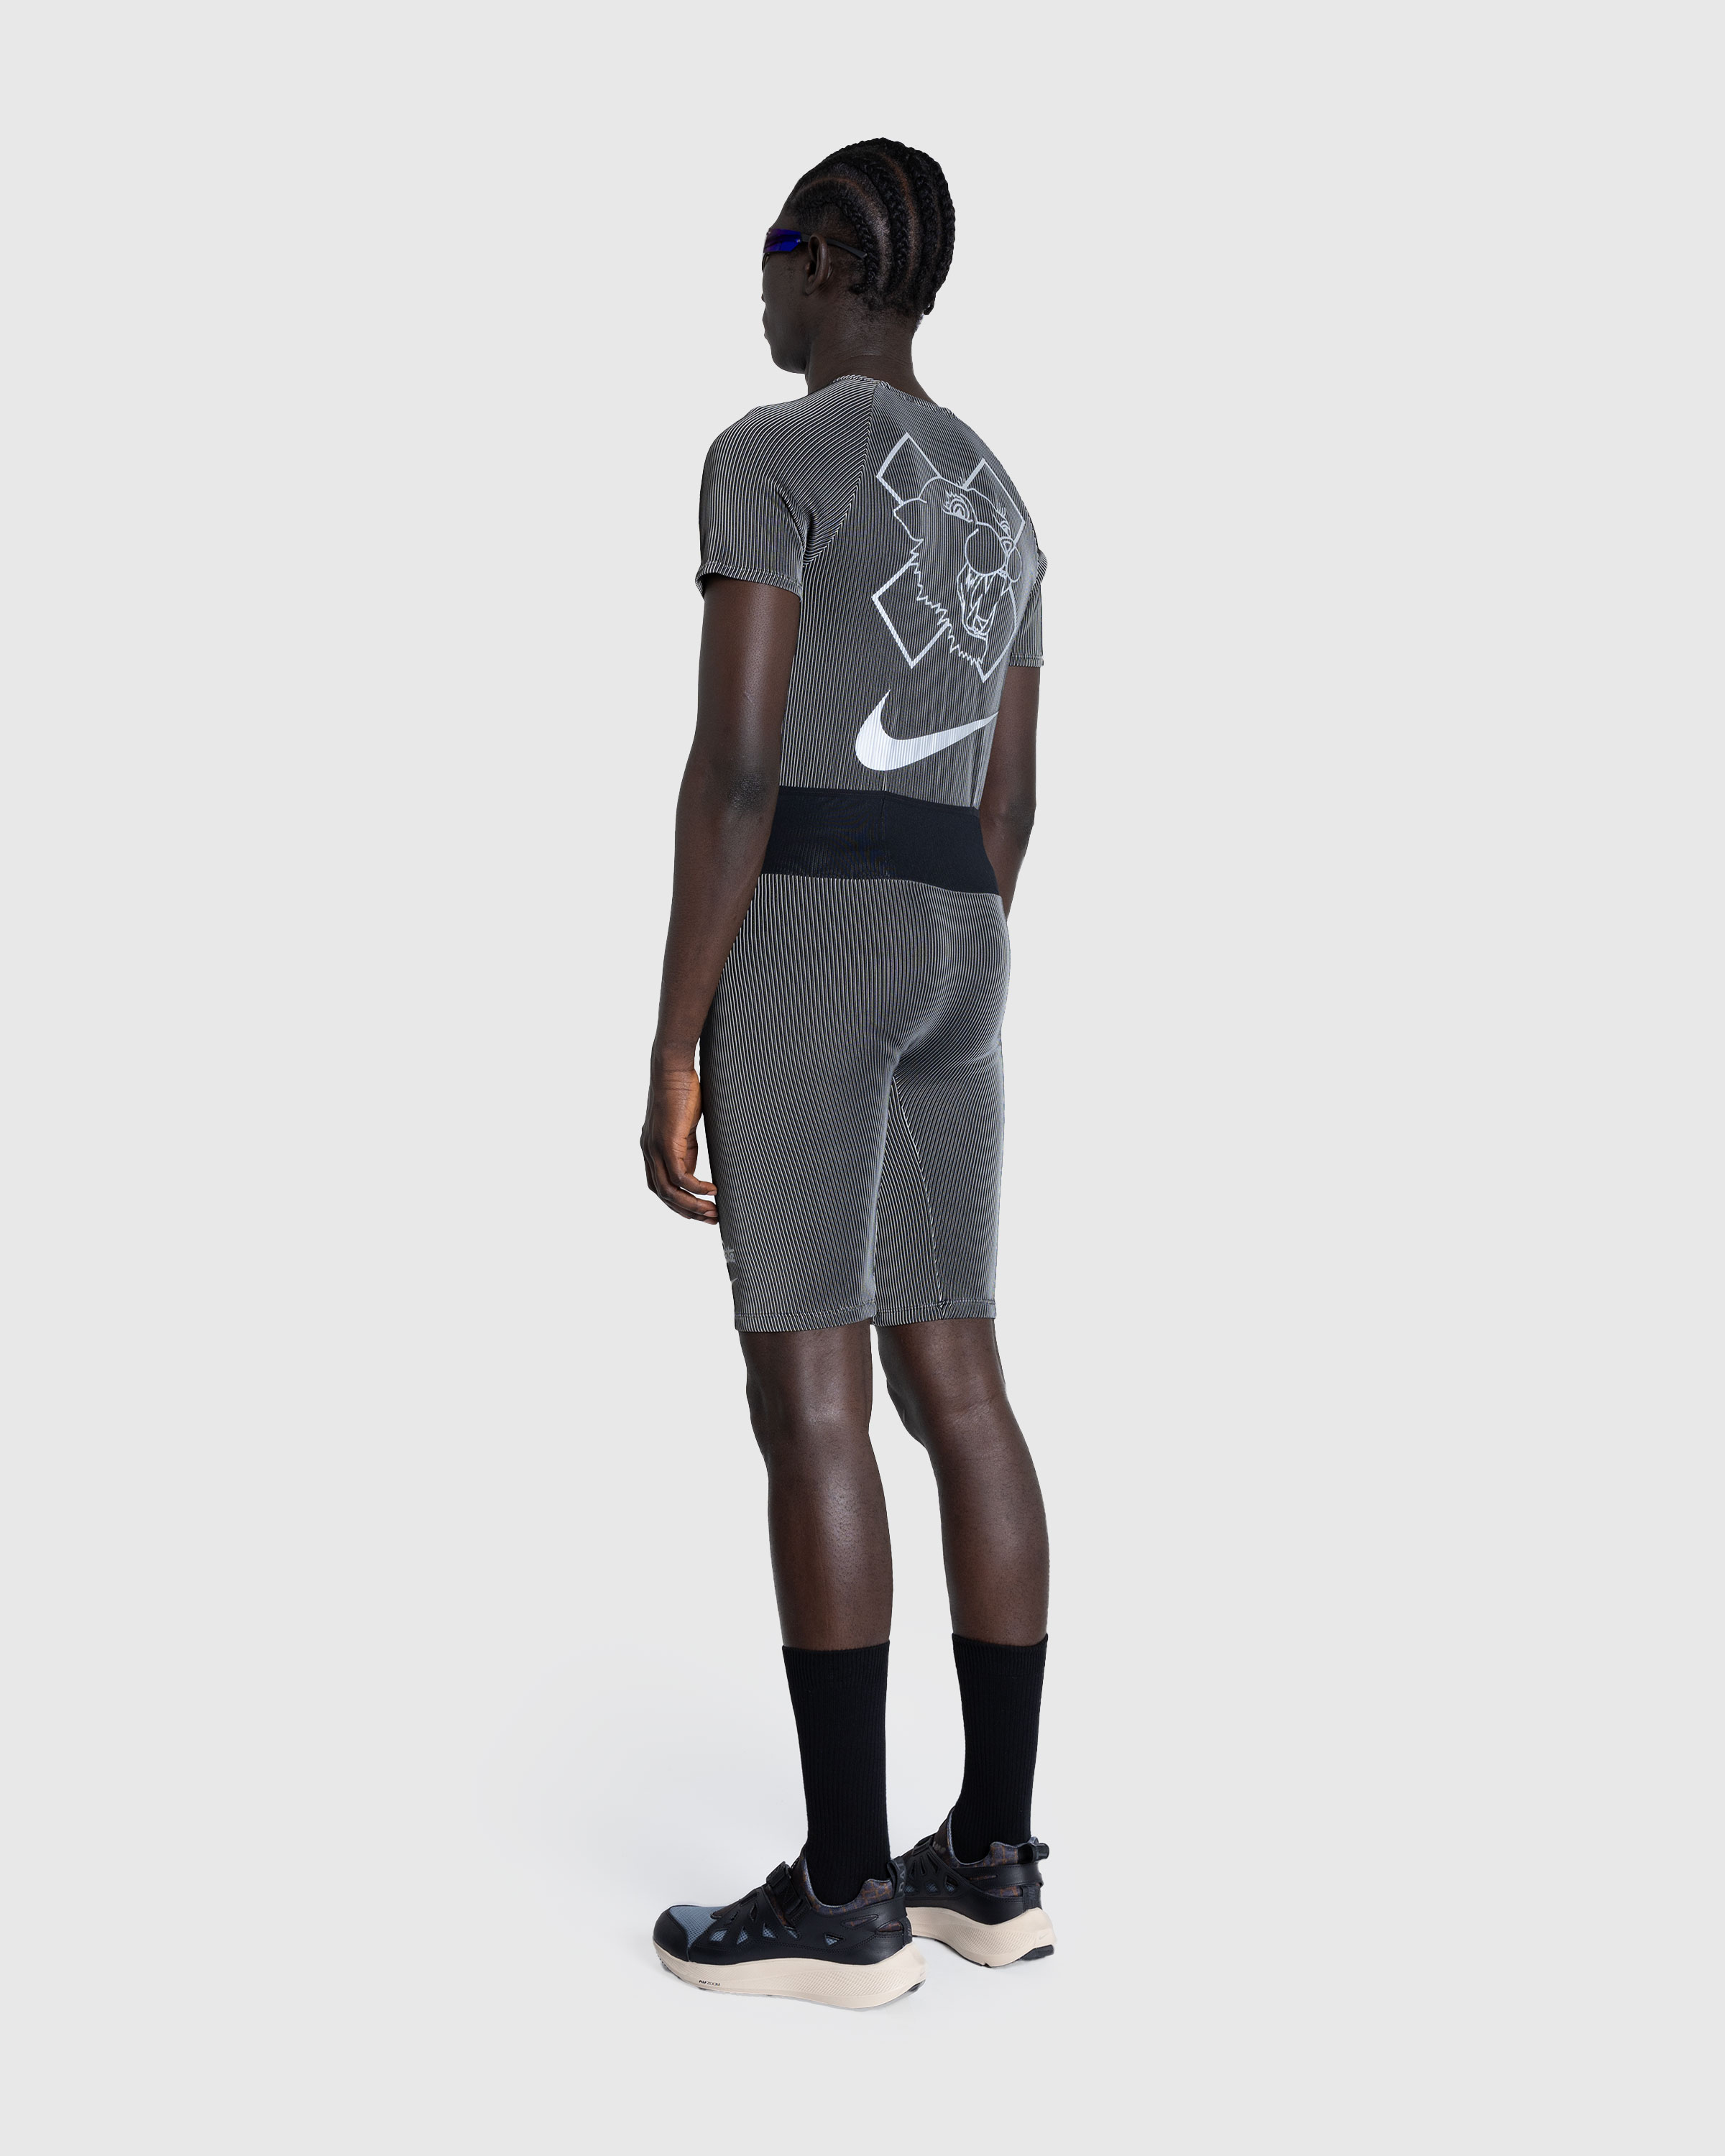 Nike x Patta – U NRG Nike x Patta Race Suit Black - Overshirt - Black - Image 3